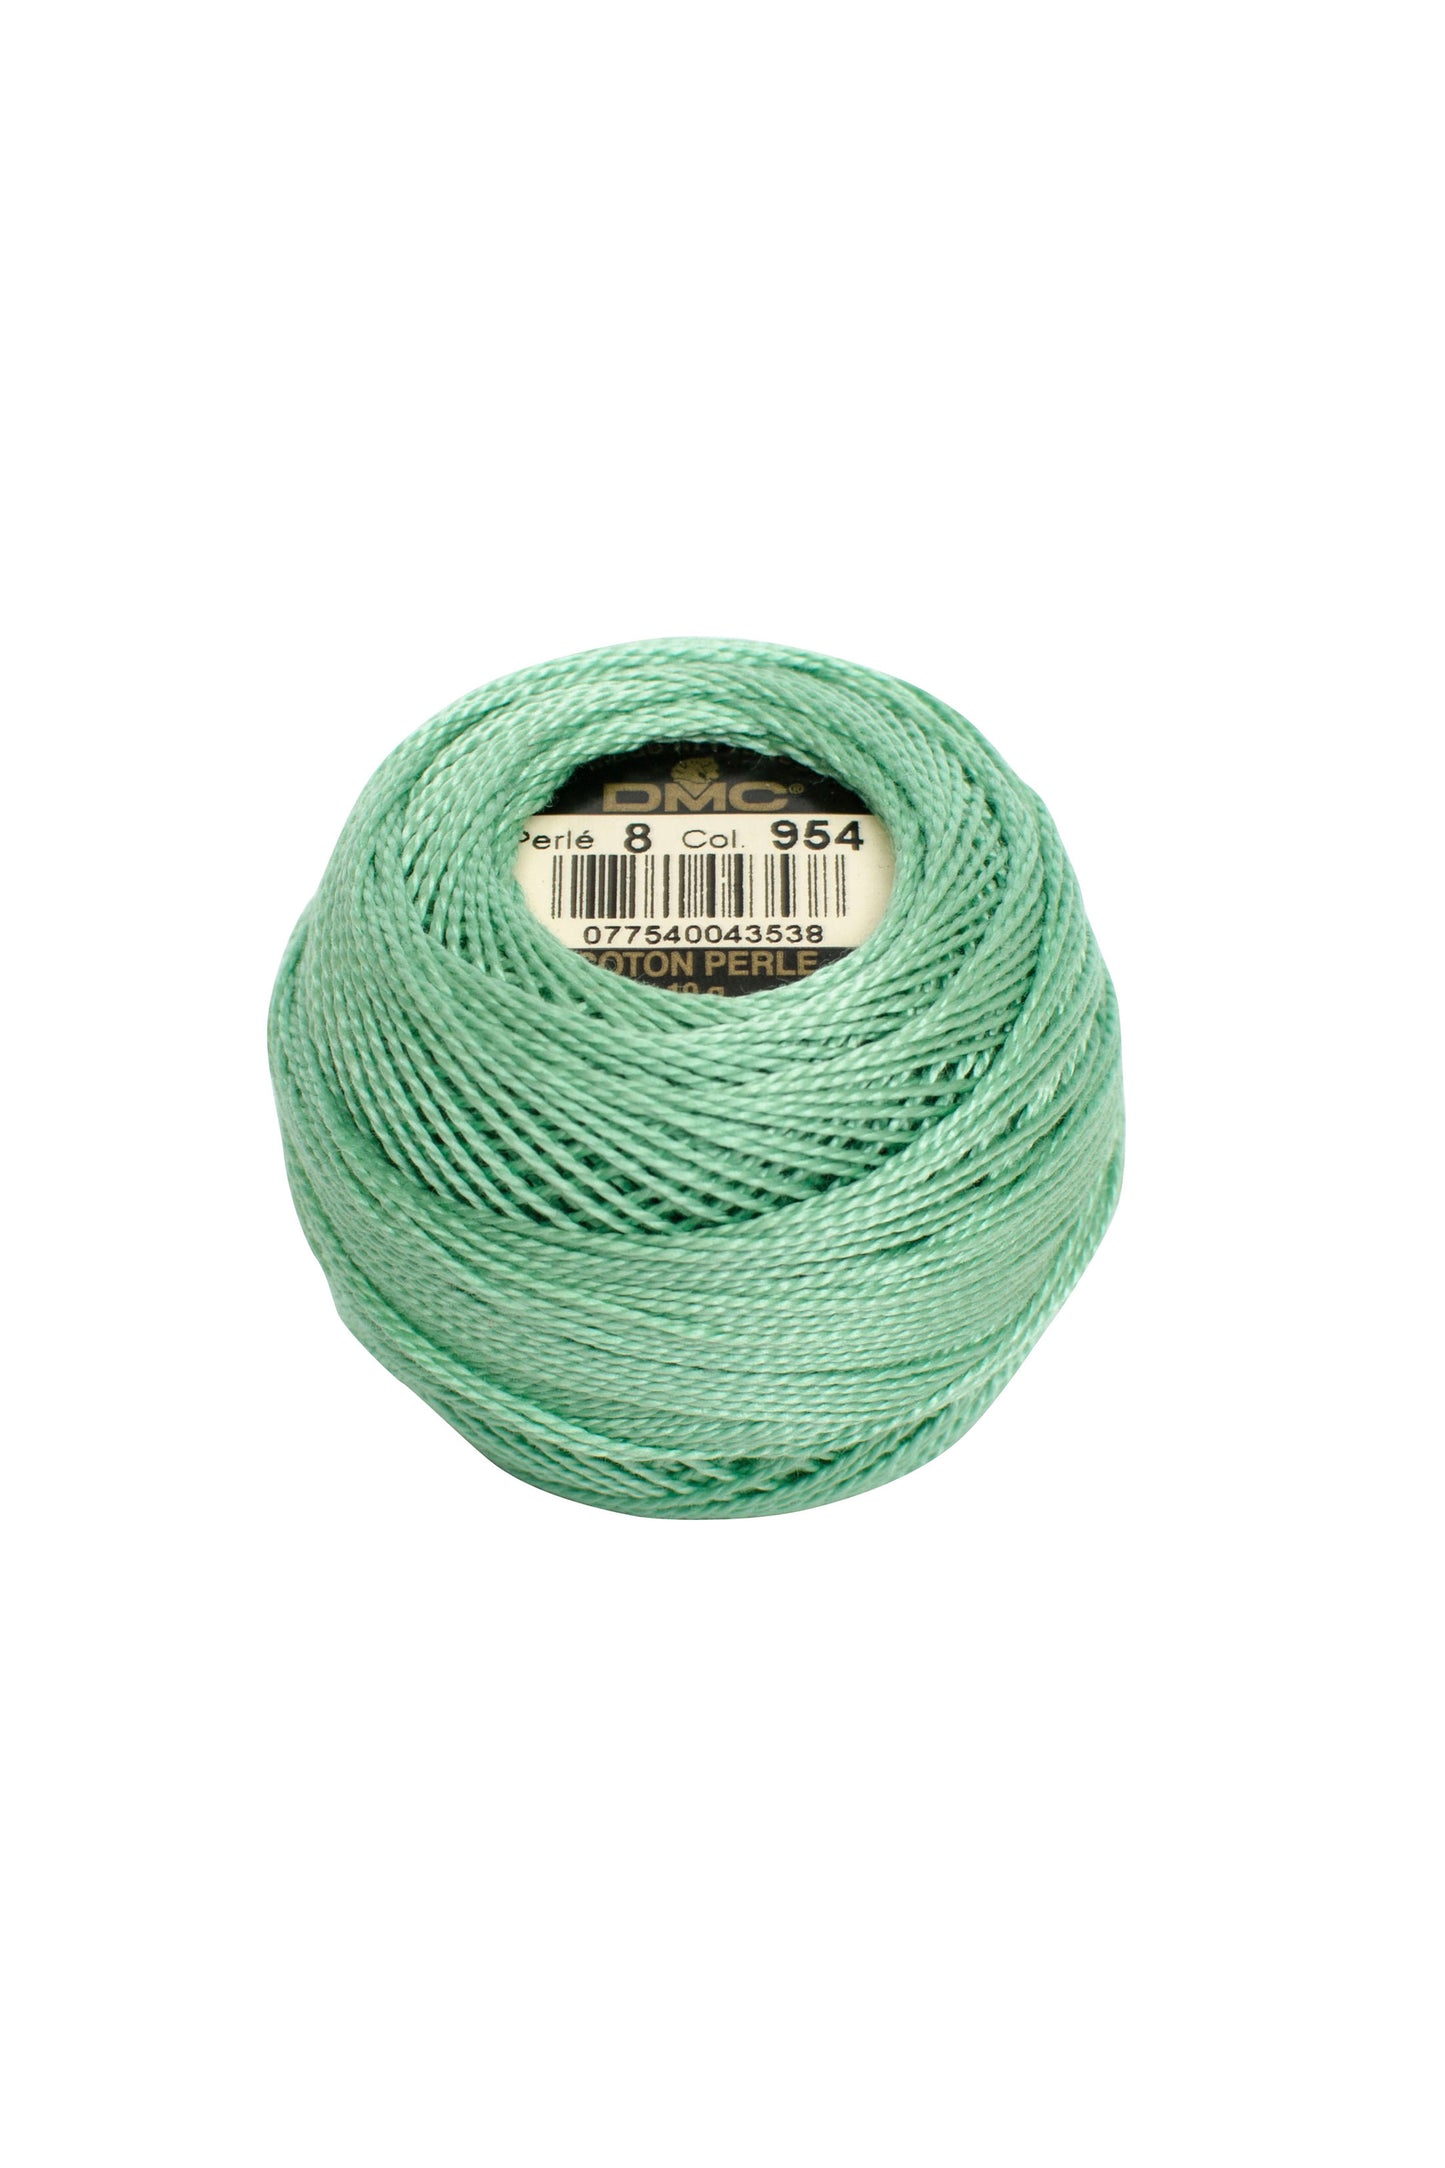 954 Nile Green – DMC #5 Perle Cotton Ball